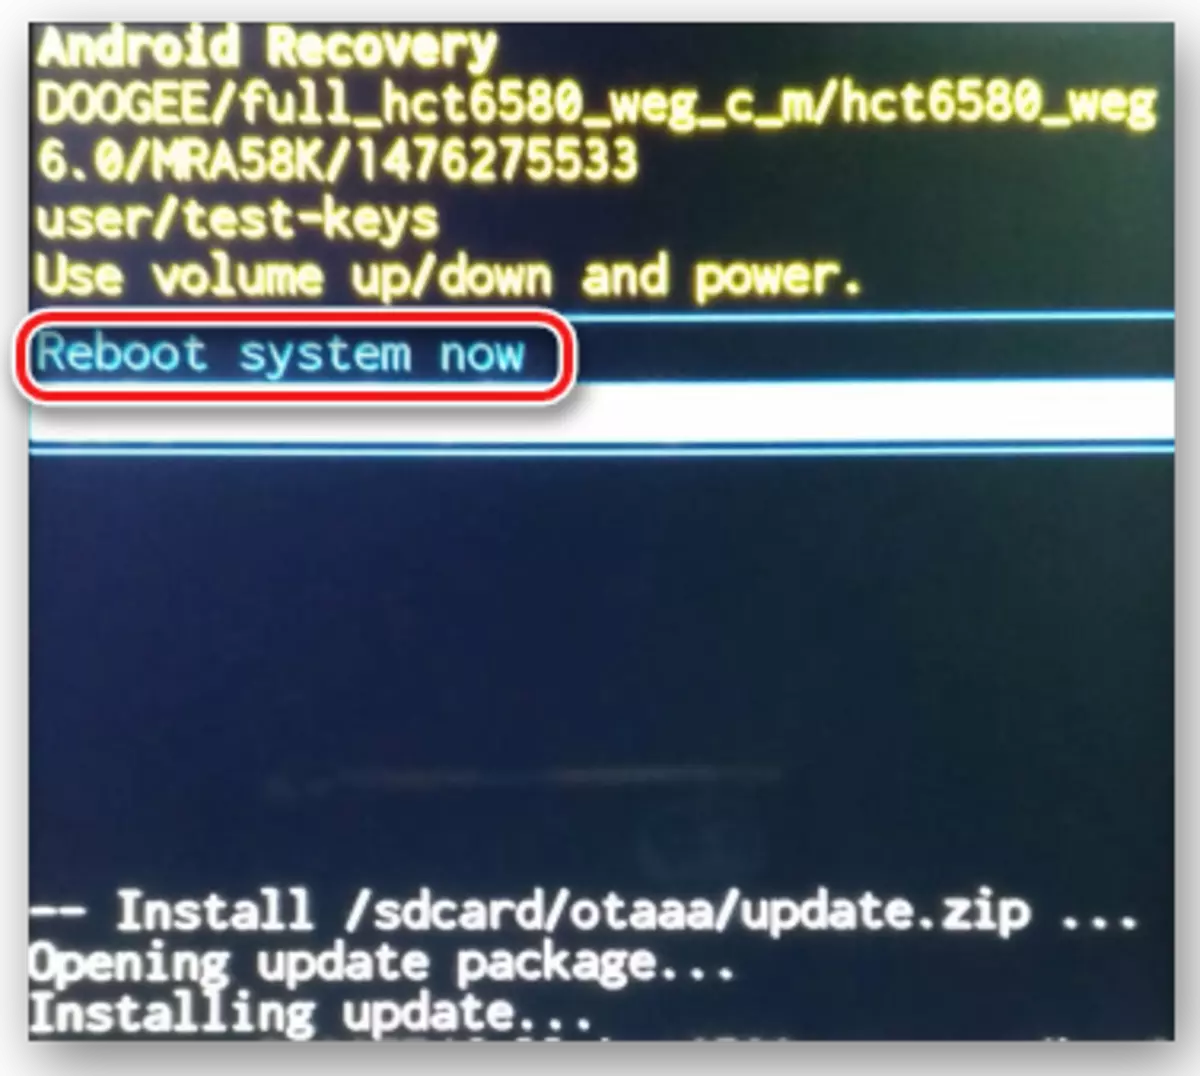 DooGee X5 Pamulihan System reboot